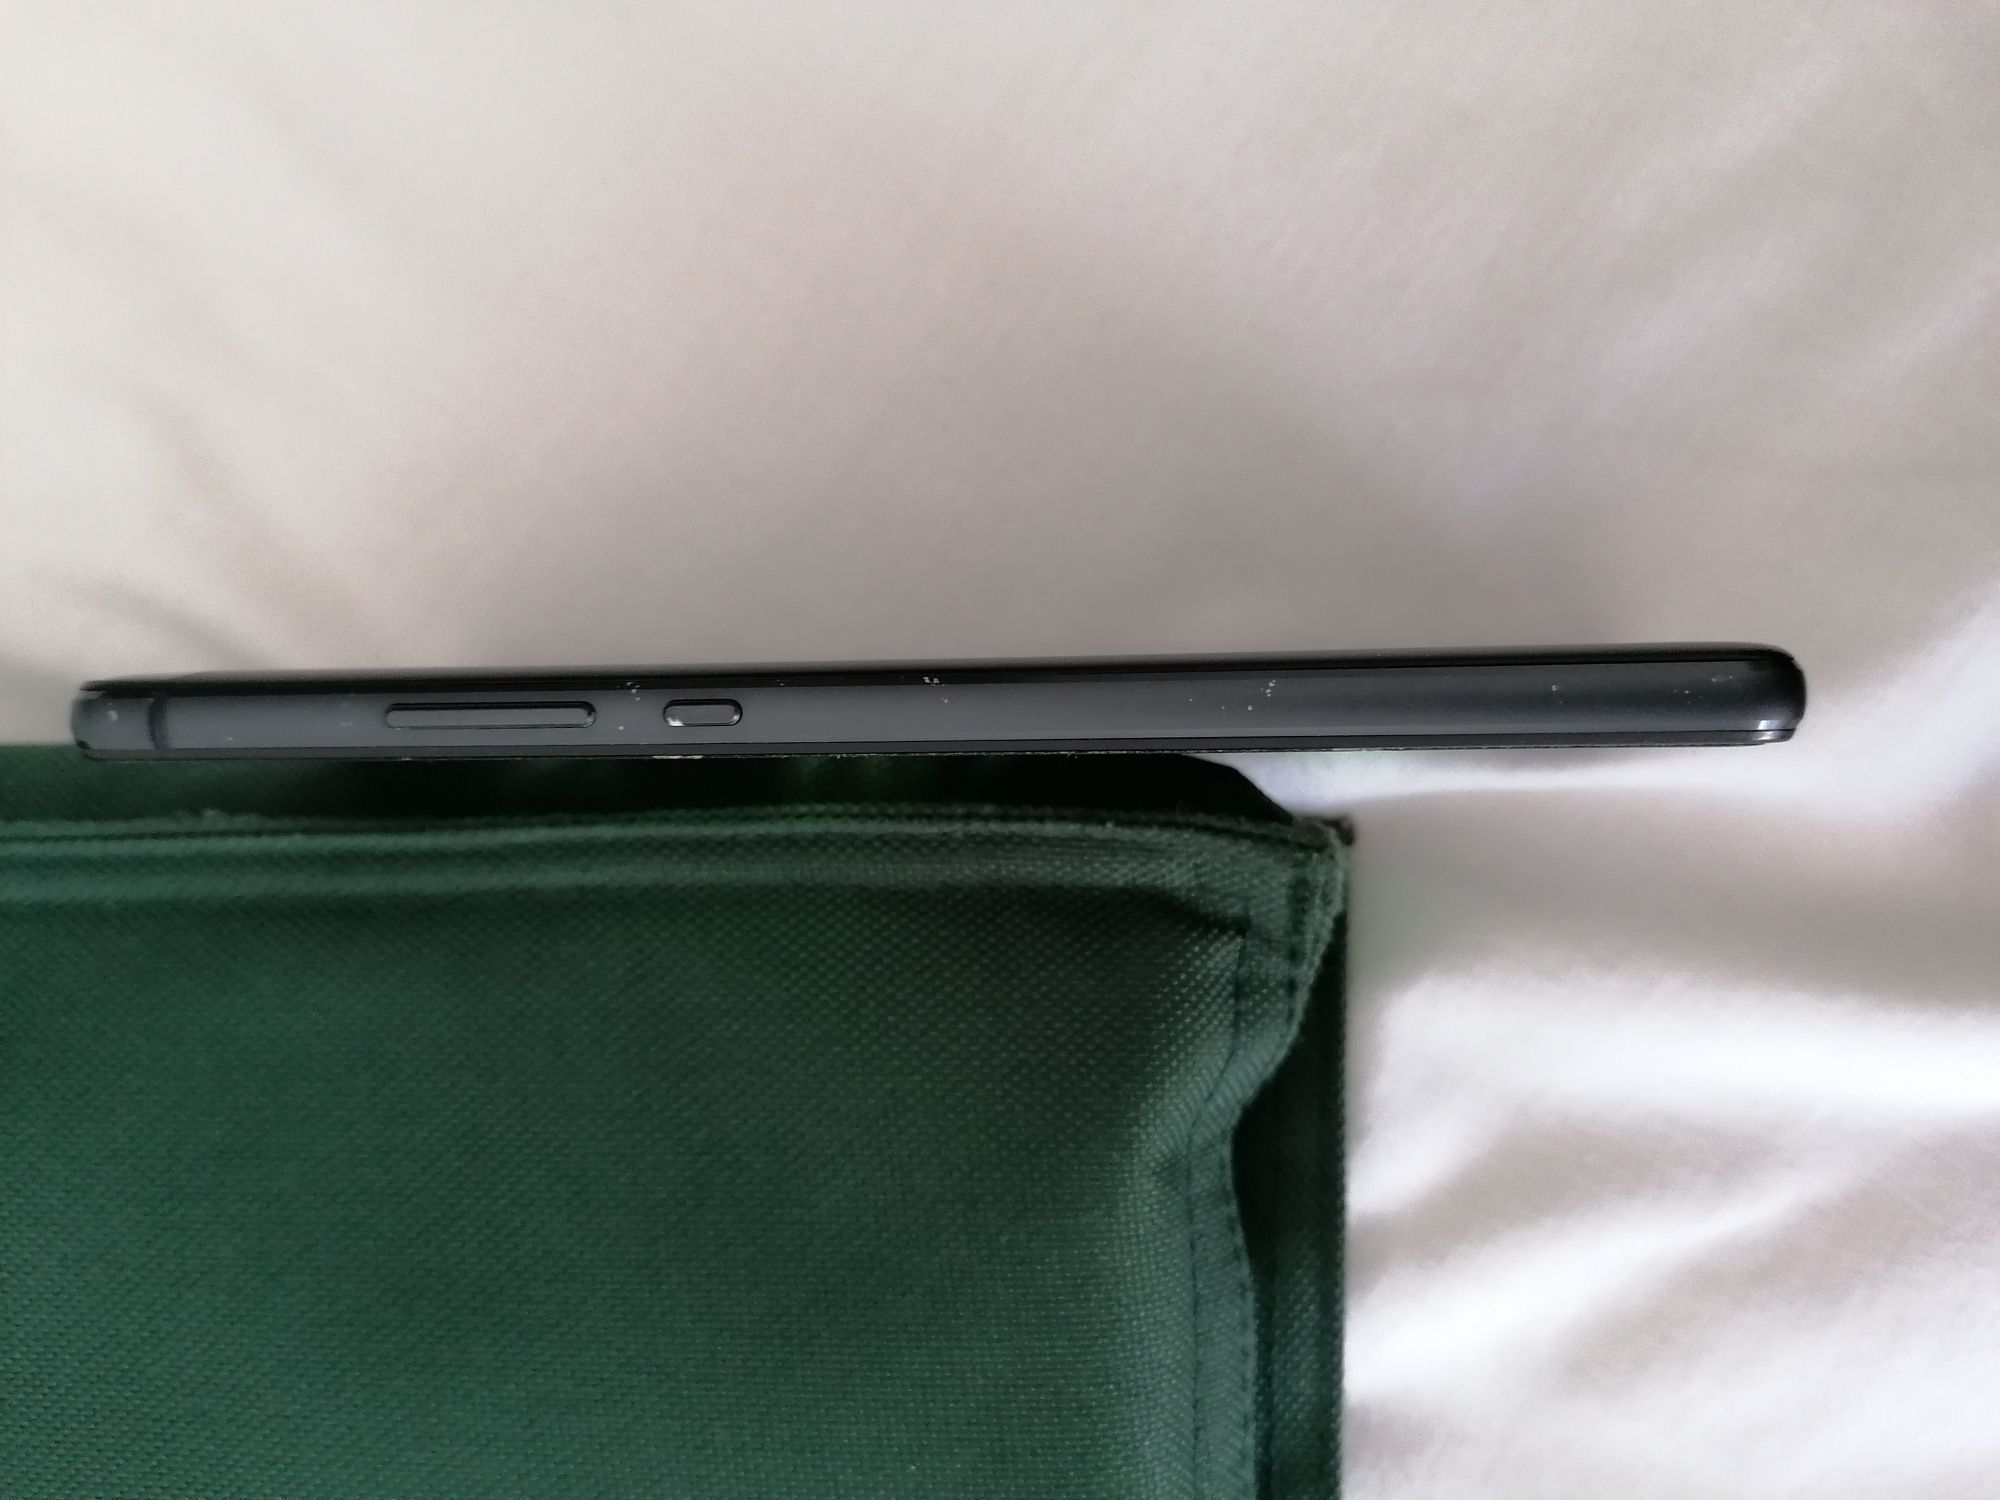 Huawei P9 lite estado novo, com capa e proteção  em vidro.